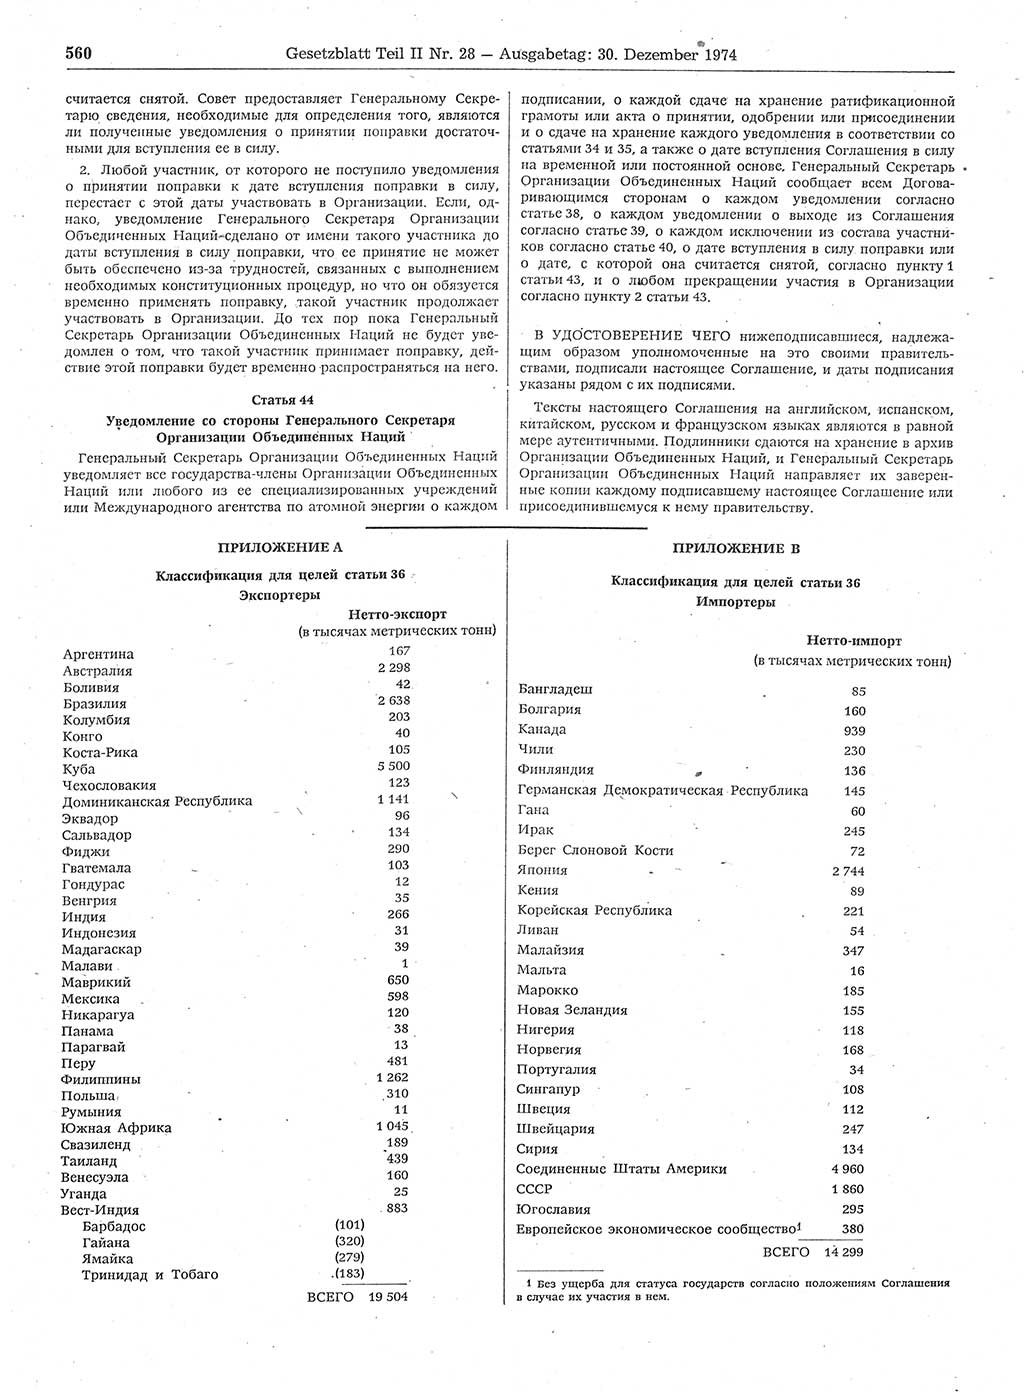 Gesetzblatt (GBl.) der Deutschen Demokratischen Republik (DDR) Teil ⅠⅠ 1974, Seite 560 (GBl. DDR ⅠⅠ 1974, S. 560)